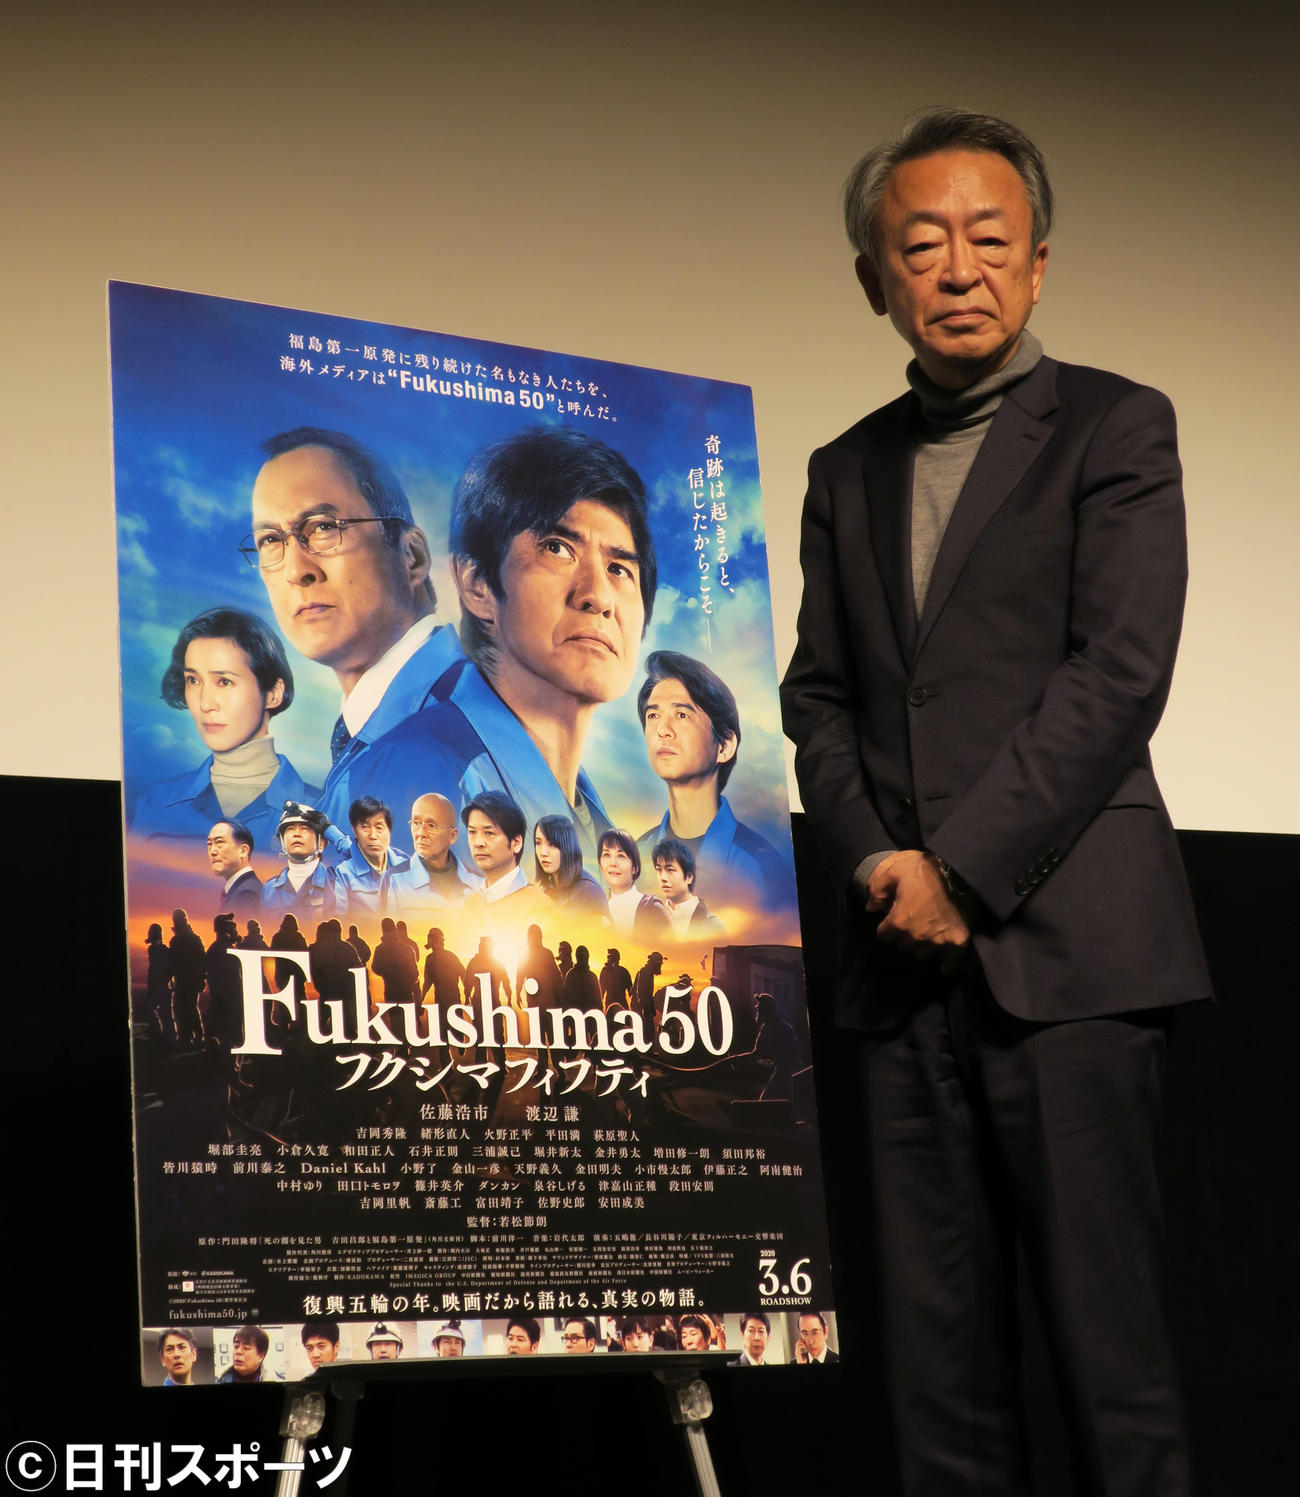 映画「Fukushima50」トークイベントを行ったジャーナリスト池上彰氏